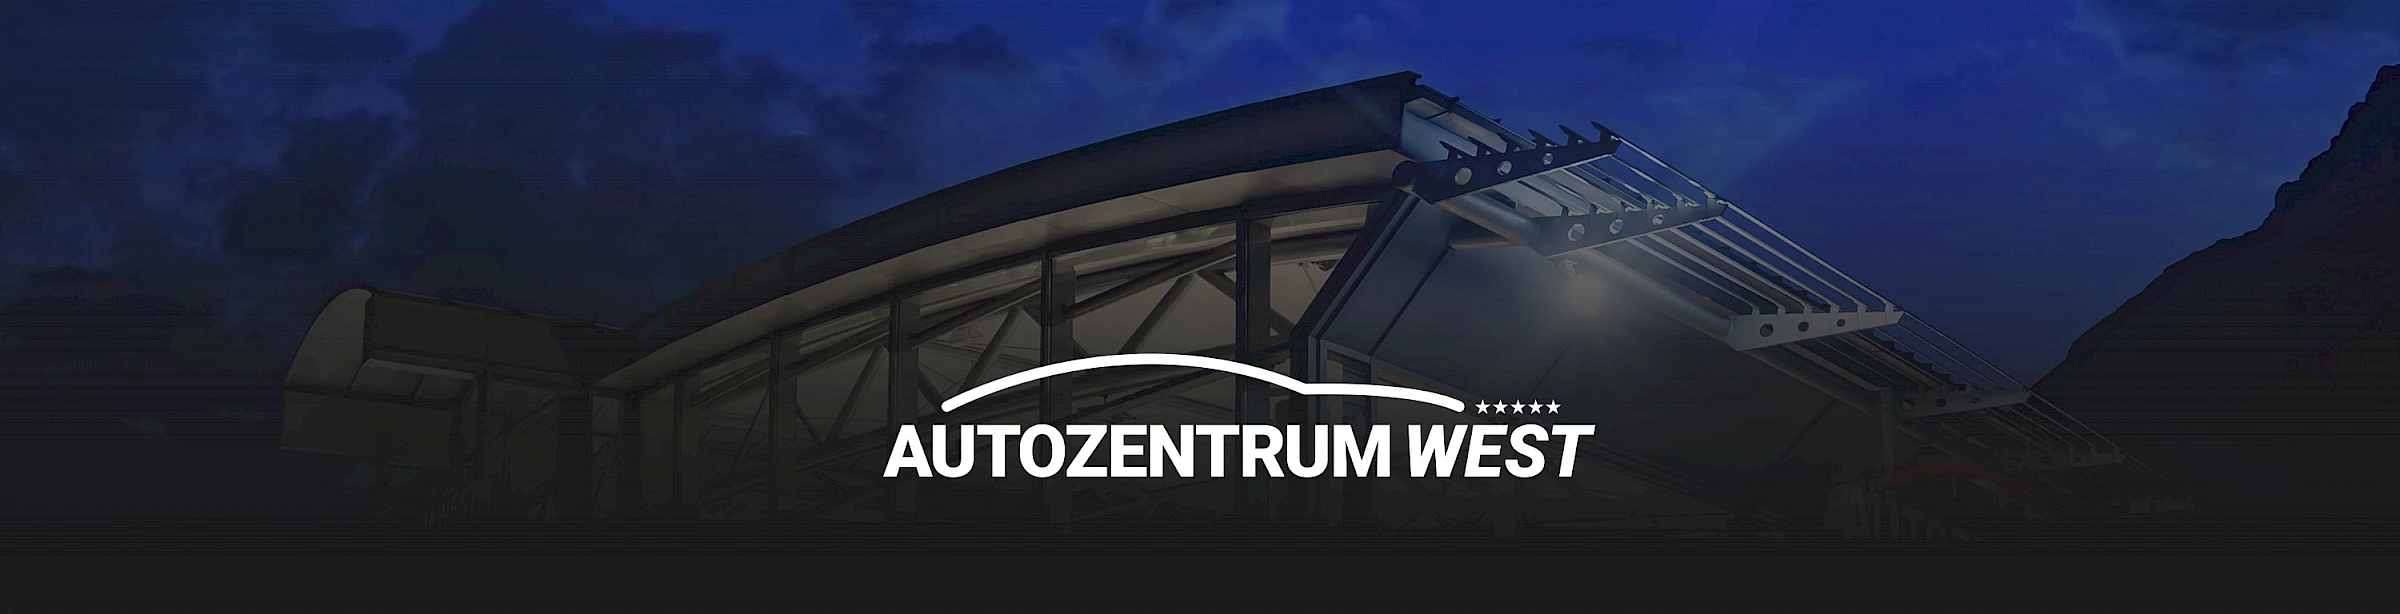 Logo des Gebrauchtwagenhändlers Autozentrum West GmbH in Telfs, erstellt und betreut durch die Werbeagentur Buerostark